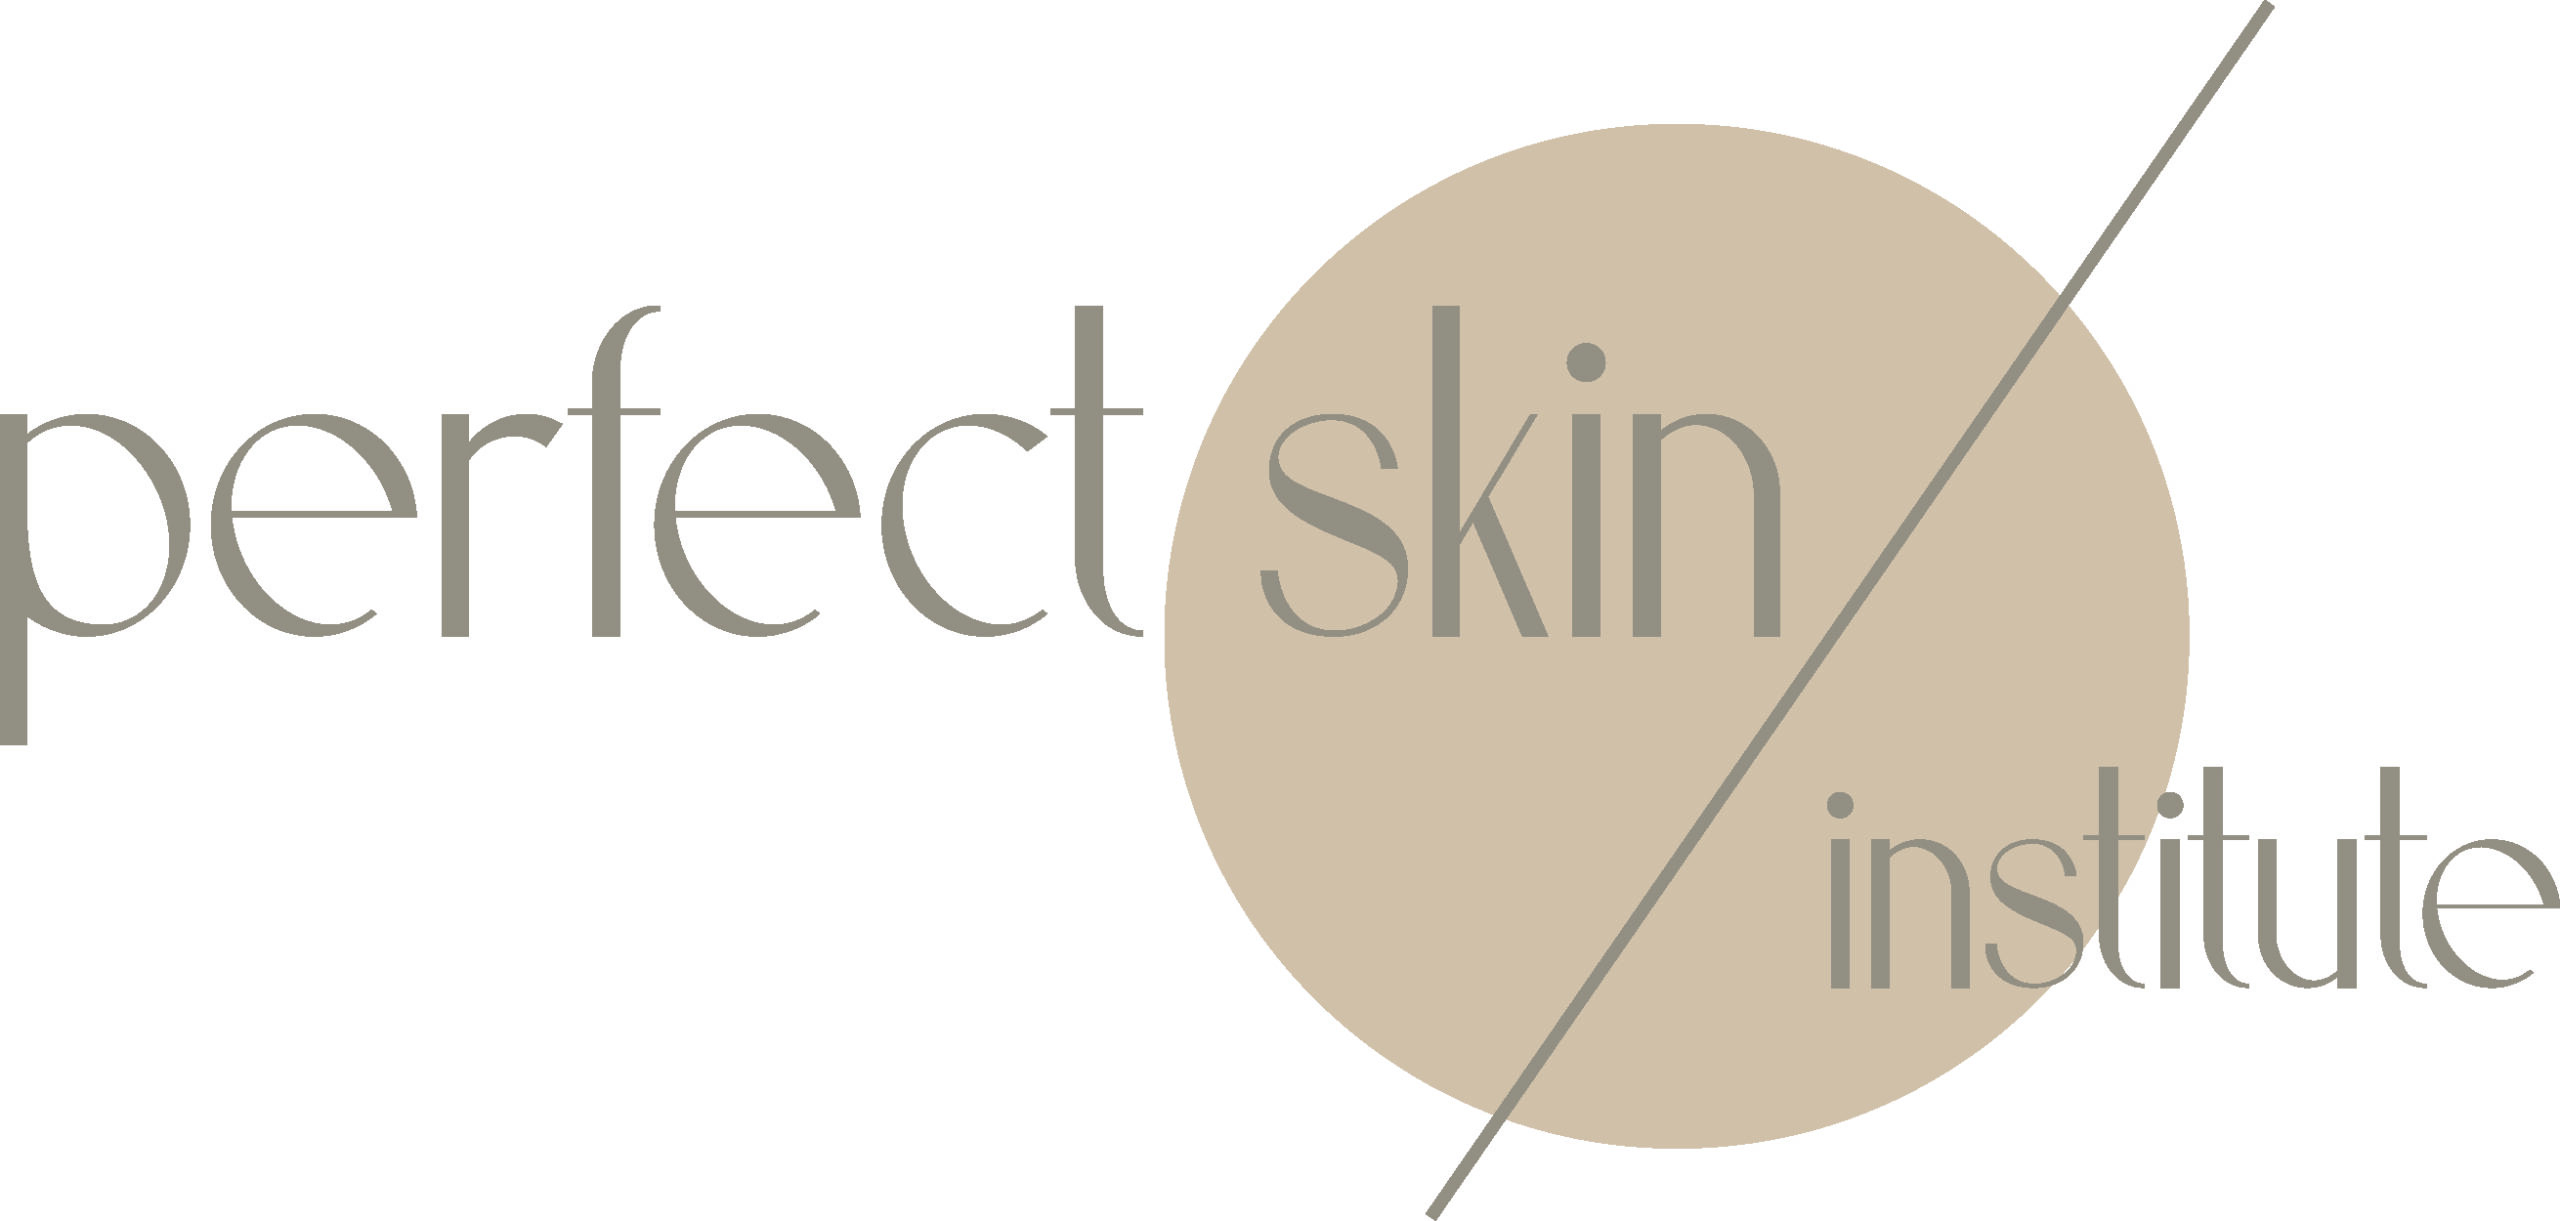 Perfect Skin Institute